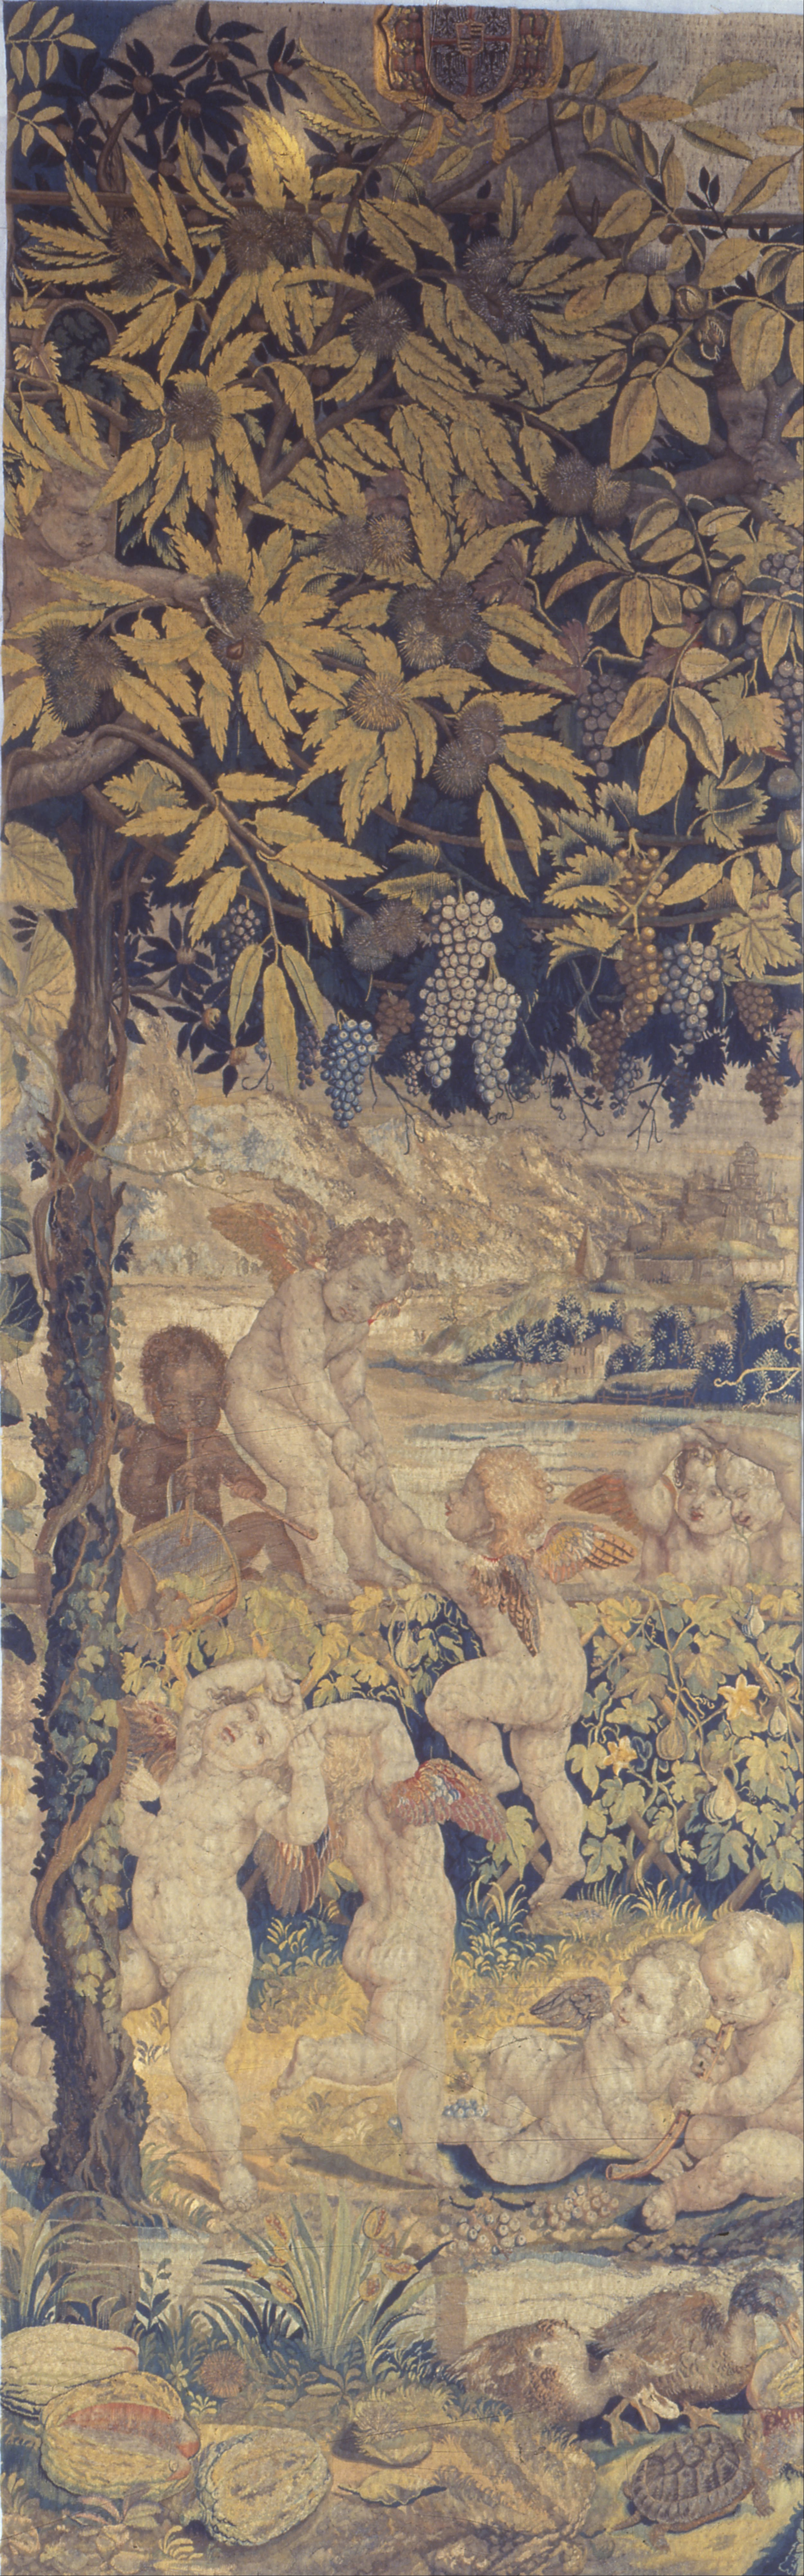 Gobelin z Bawiącymi się Puttami by Giulio Romano - 1540 - 1545 - 107 x 341 cm 